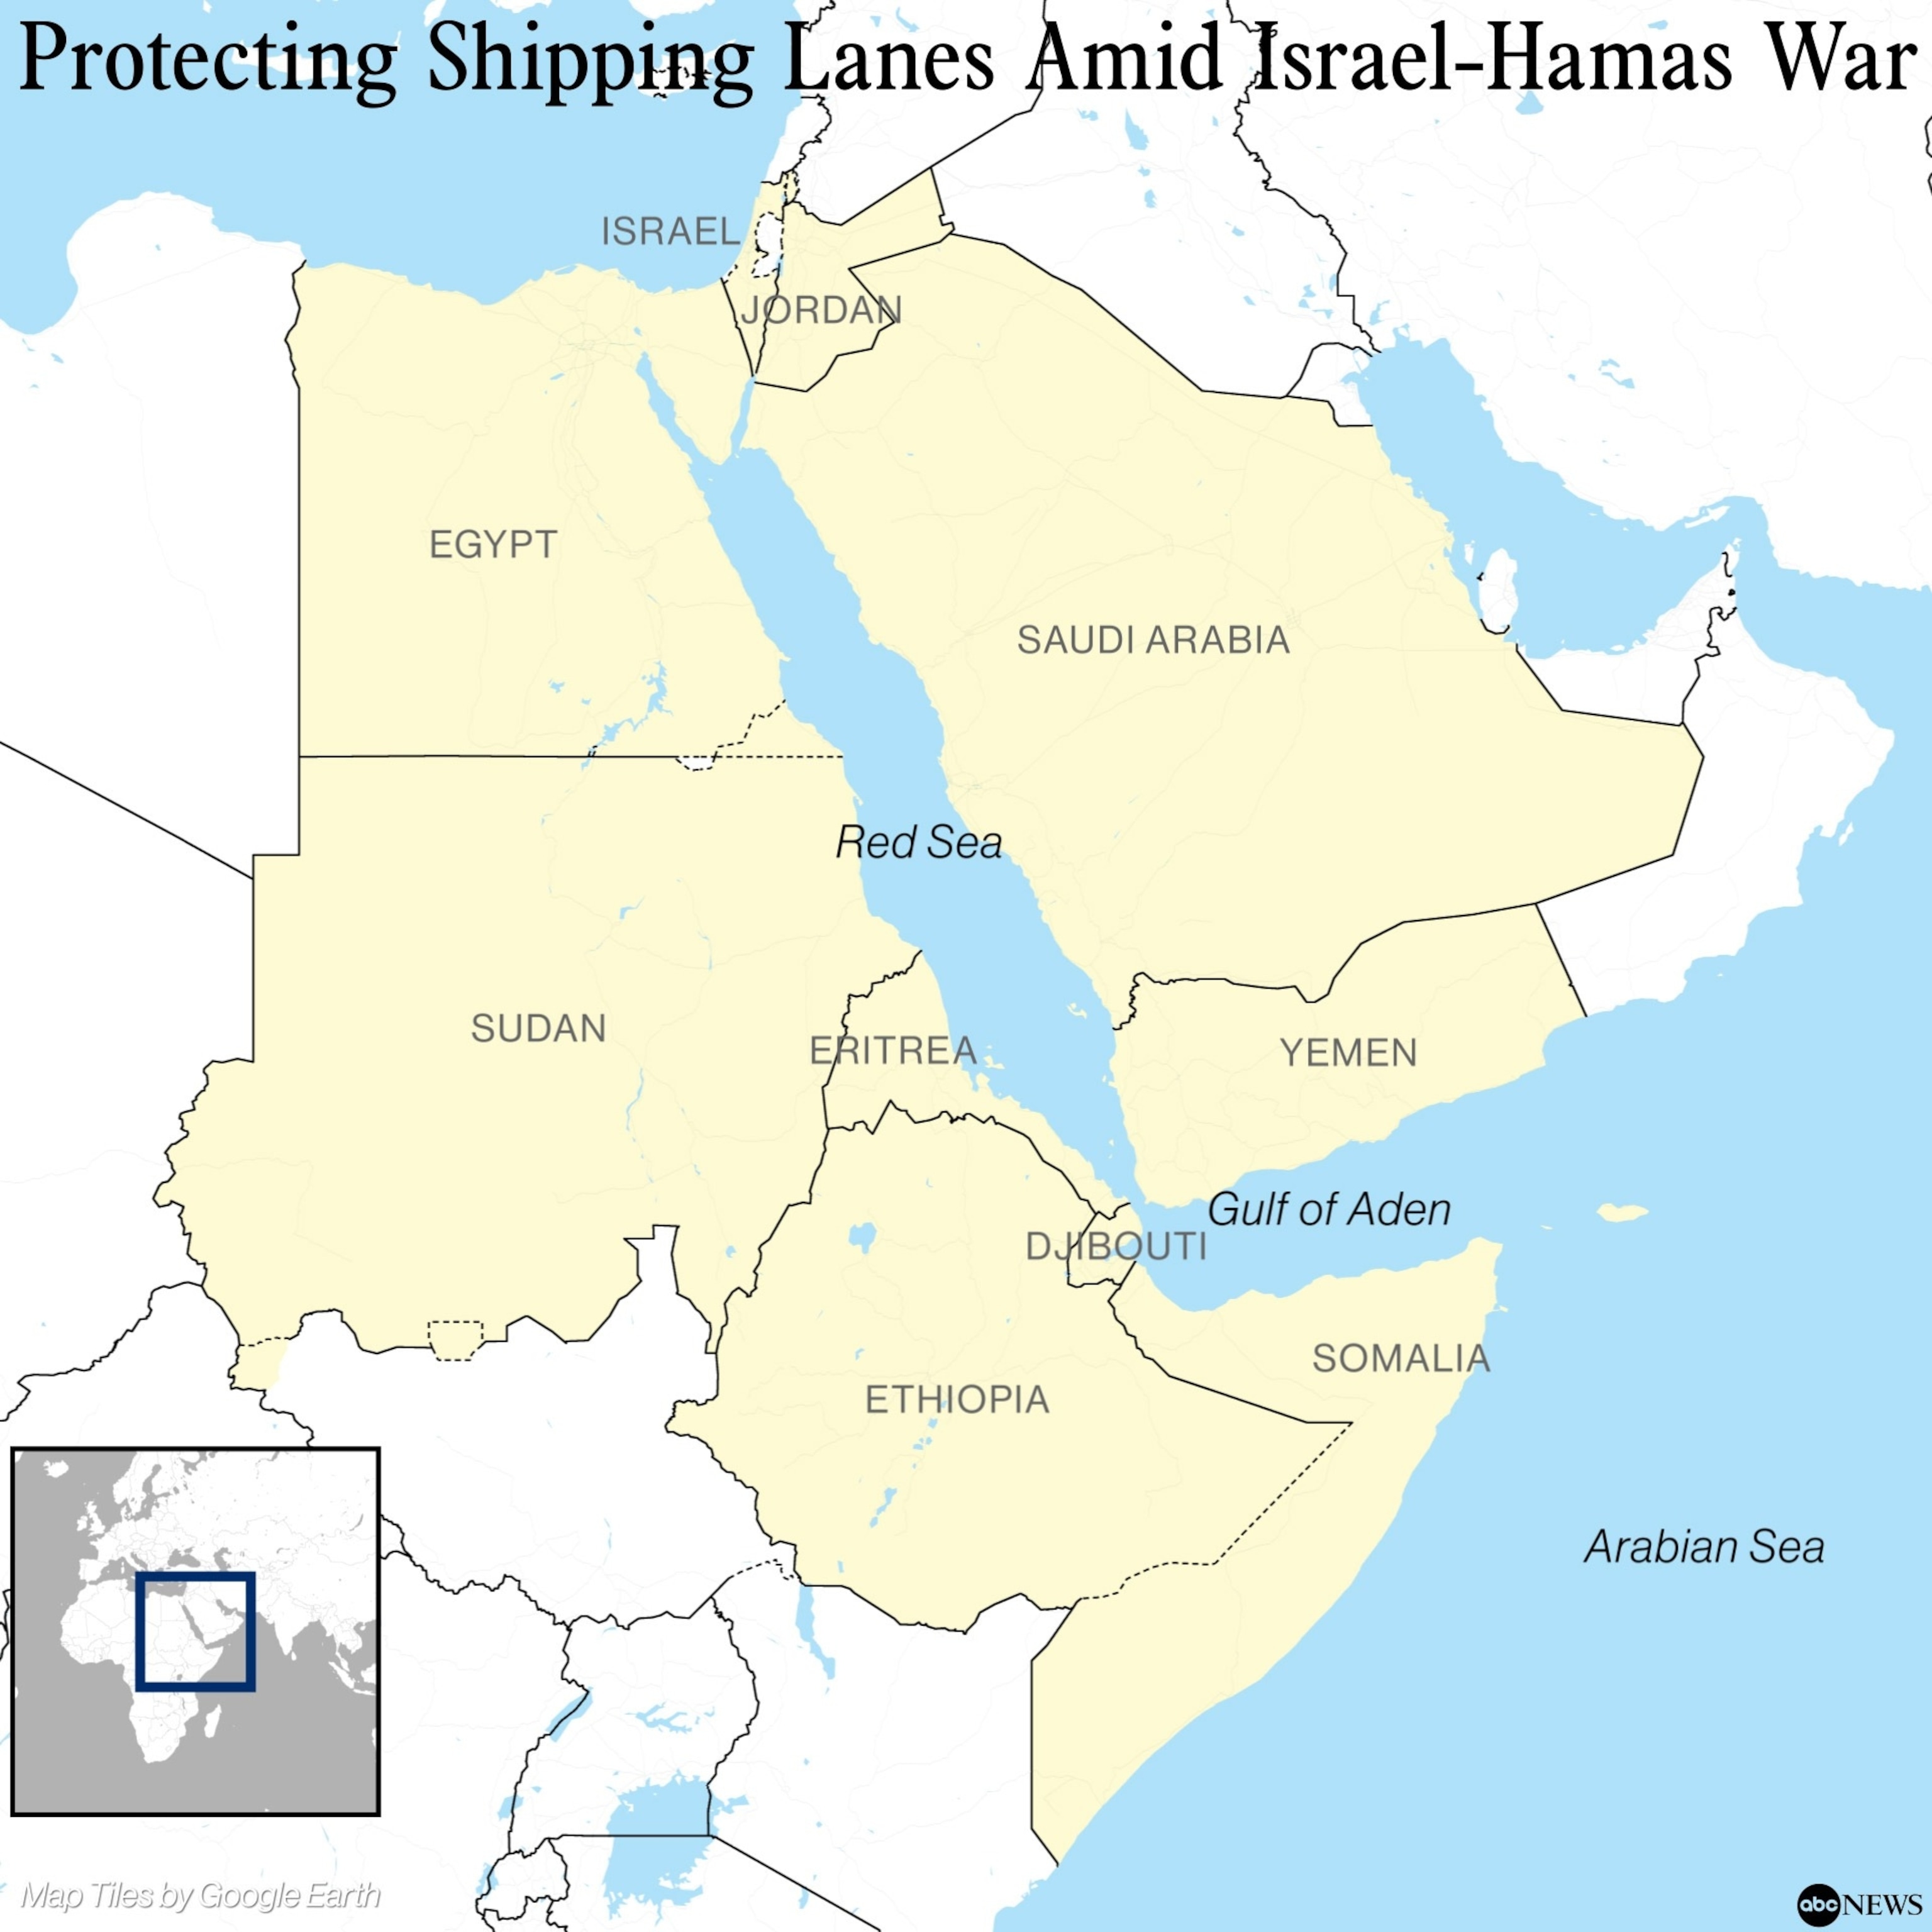 PHOTO: Protecting shipping lanes amid Israel-Hamas war